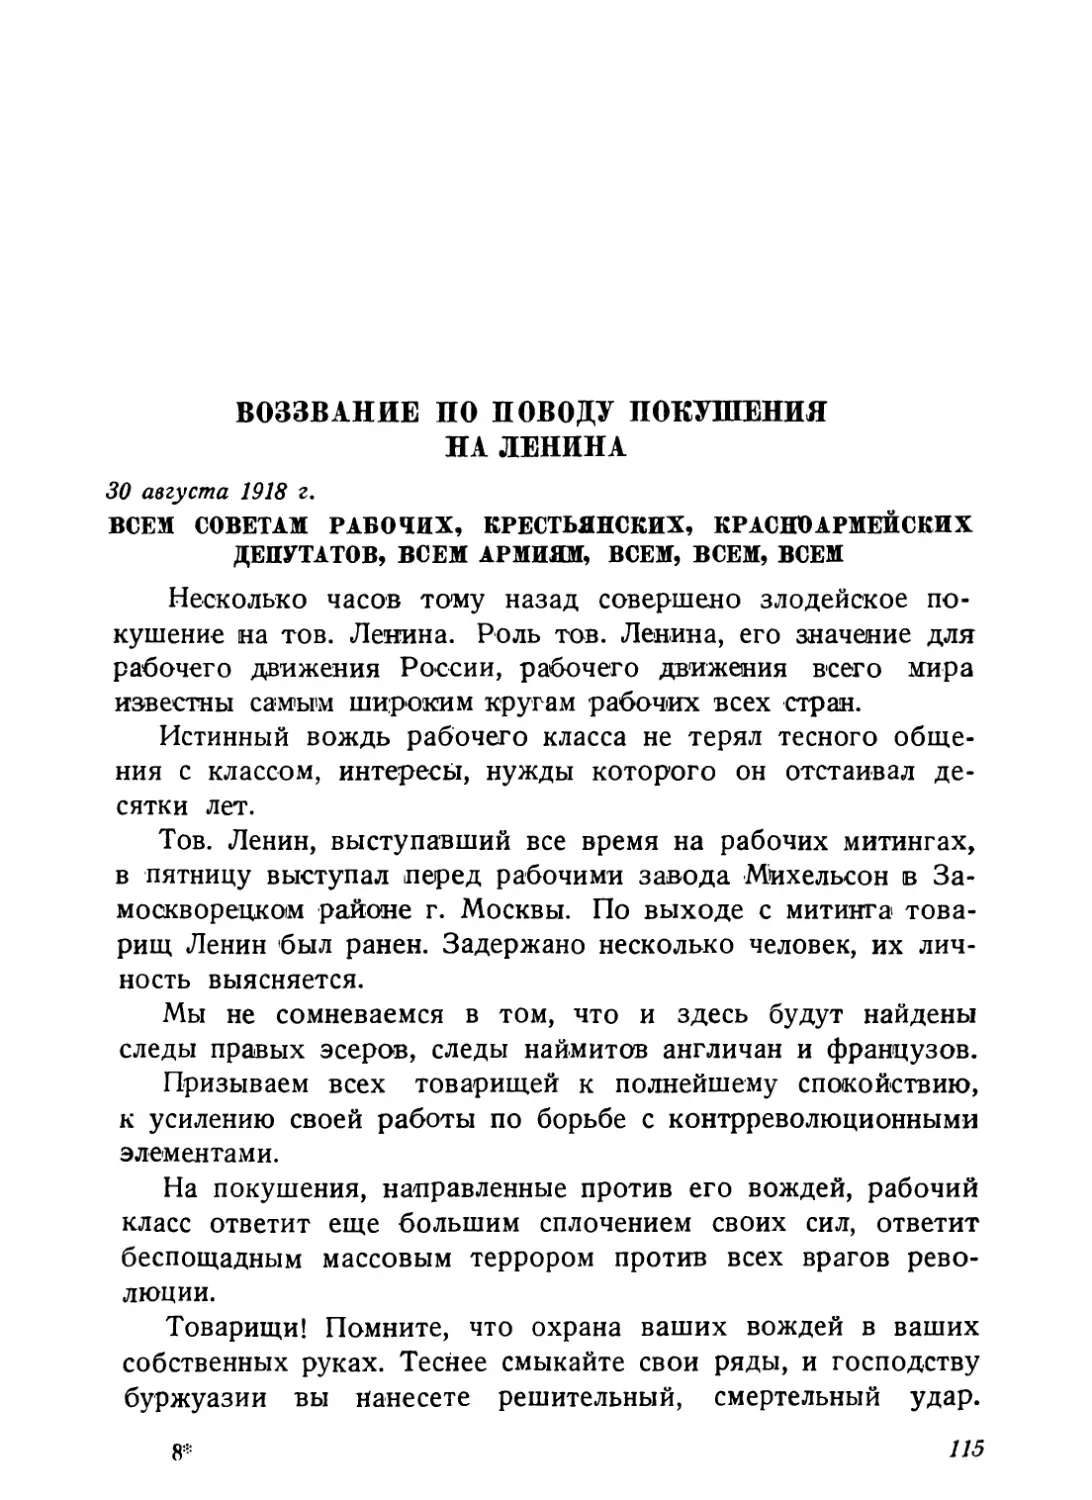 Воззвание по поводу покушения на Ленина, 30 августа 1918 г